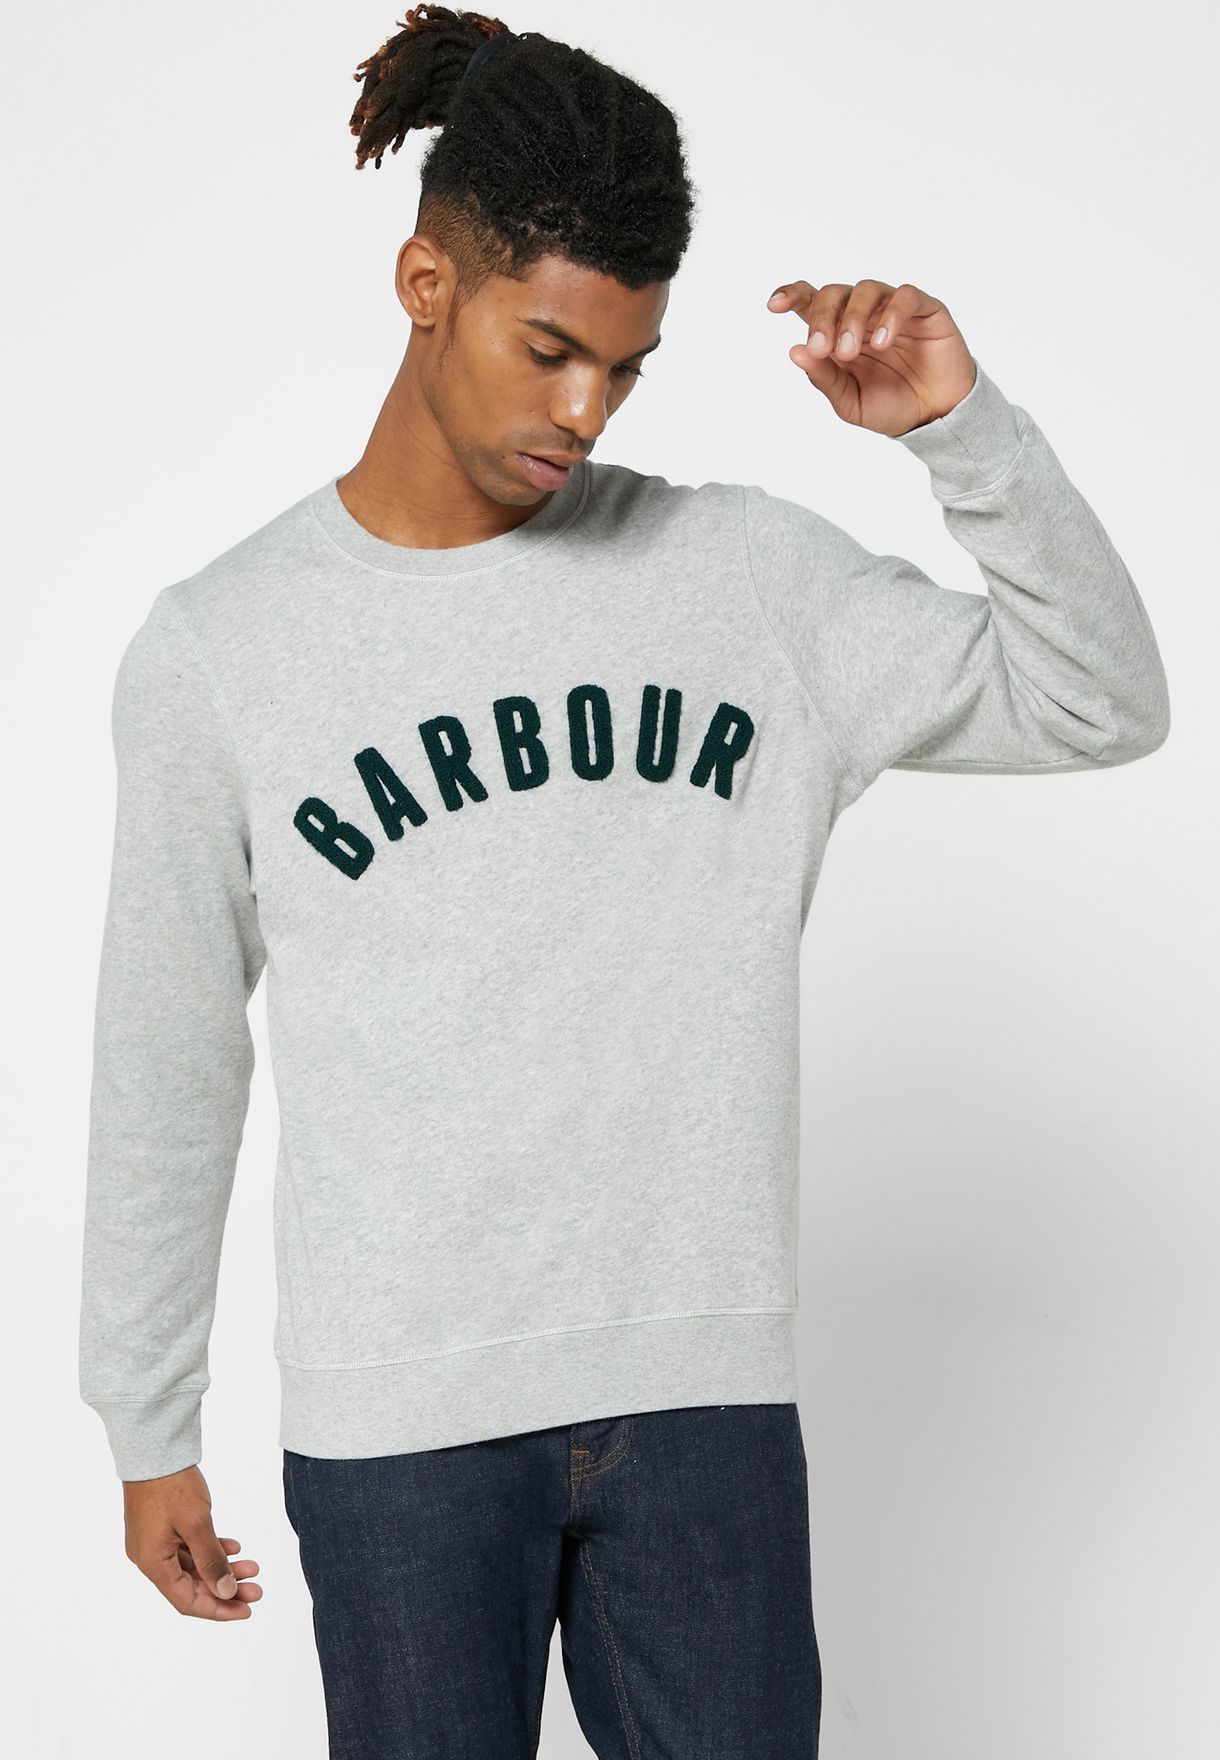 barbour prep sweatshirt